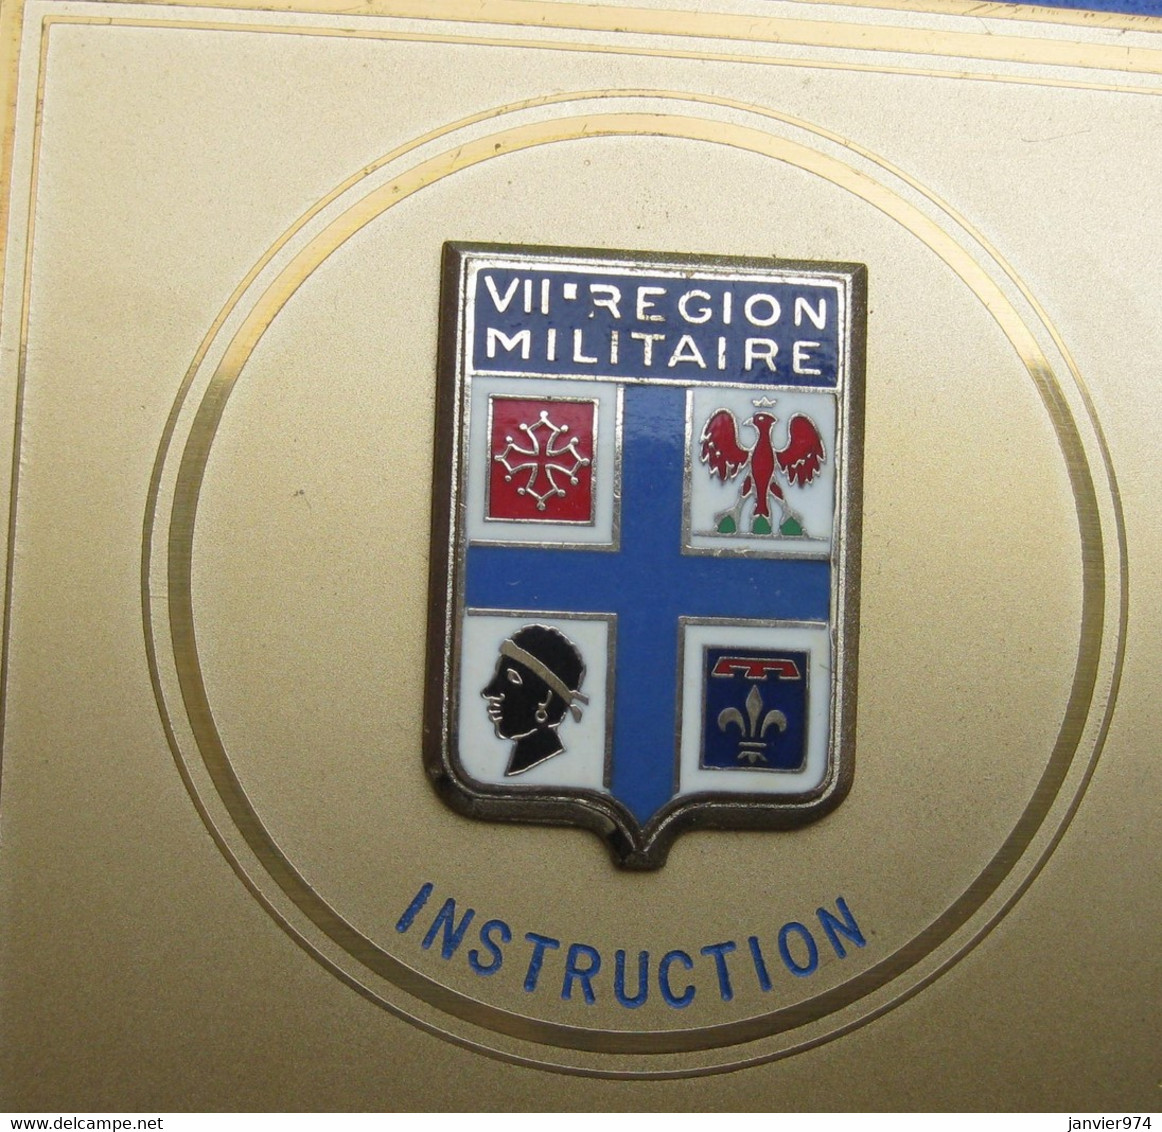 Plaque avec sa boite VII RM - 7e Región Militaire Instruction attribué Adjudant J.L. LACOSTE 1971 - 1976